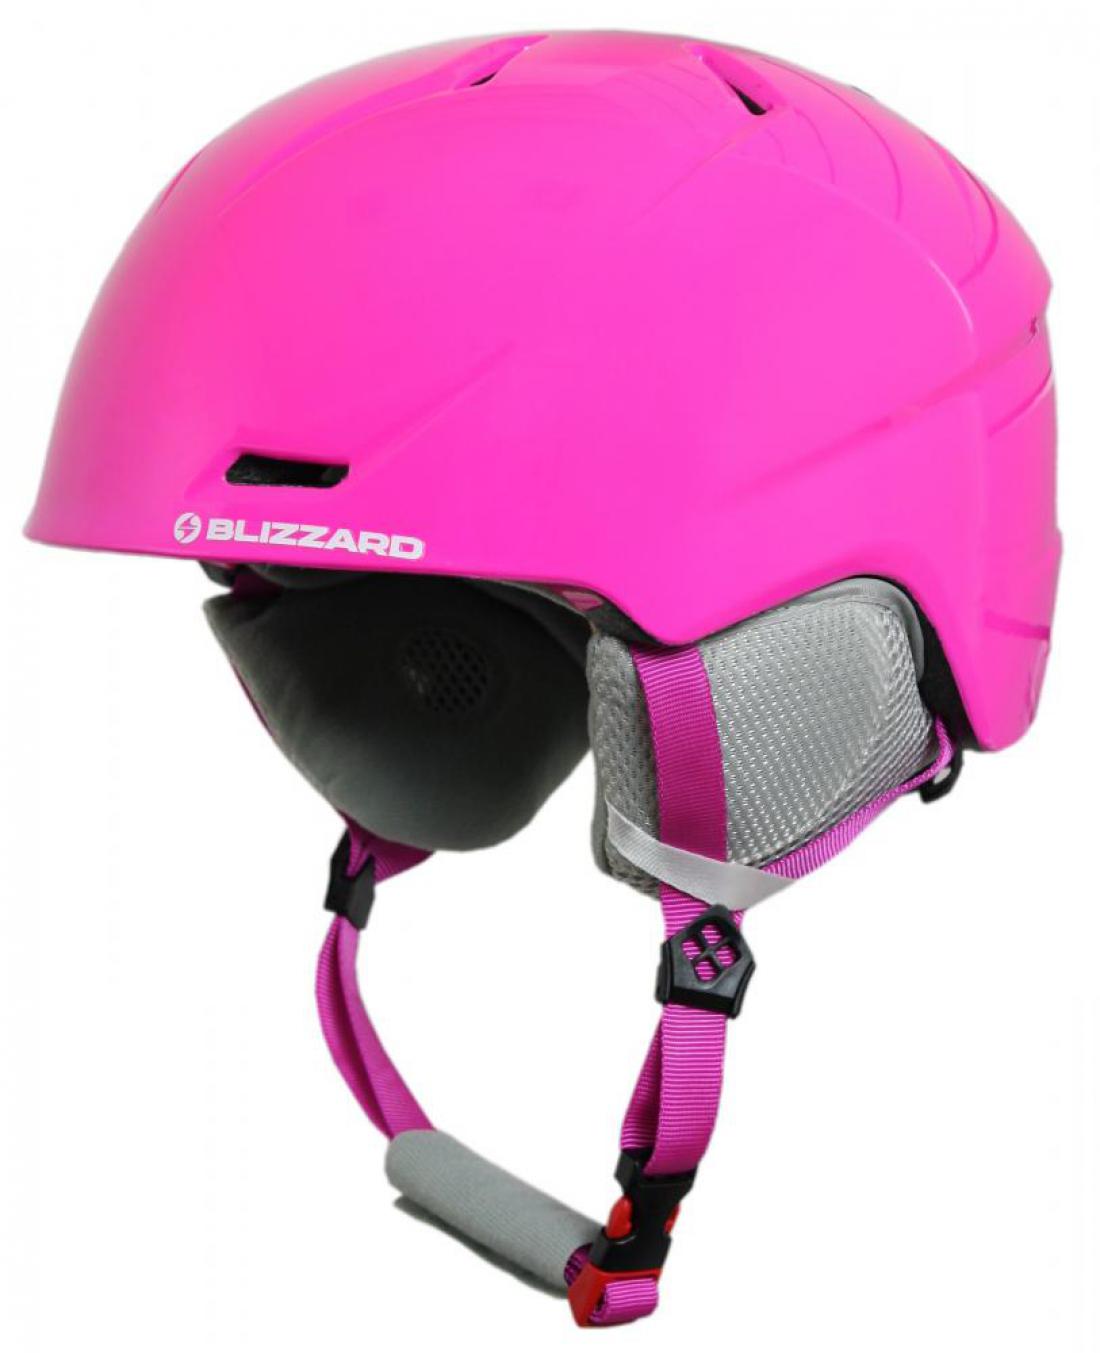 Viva Spider ski helmet, pink shiny